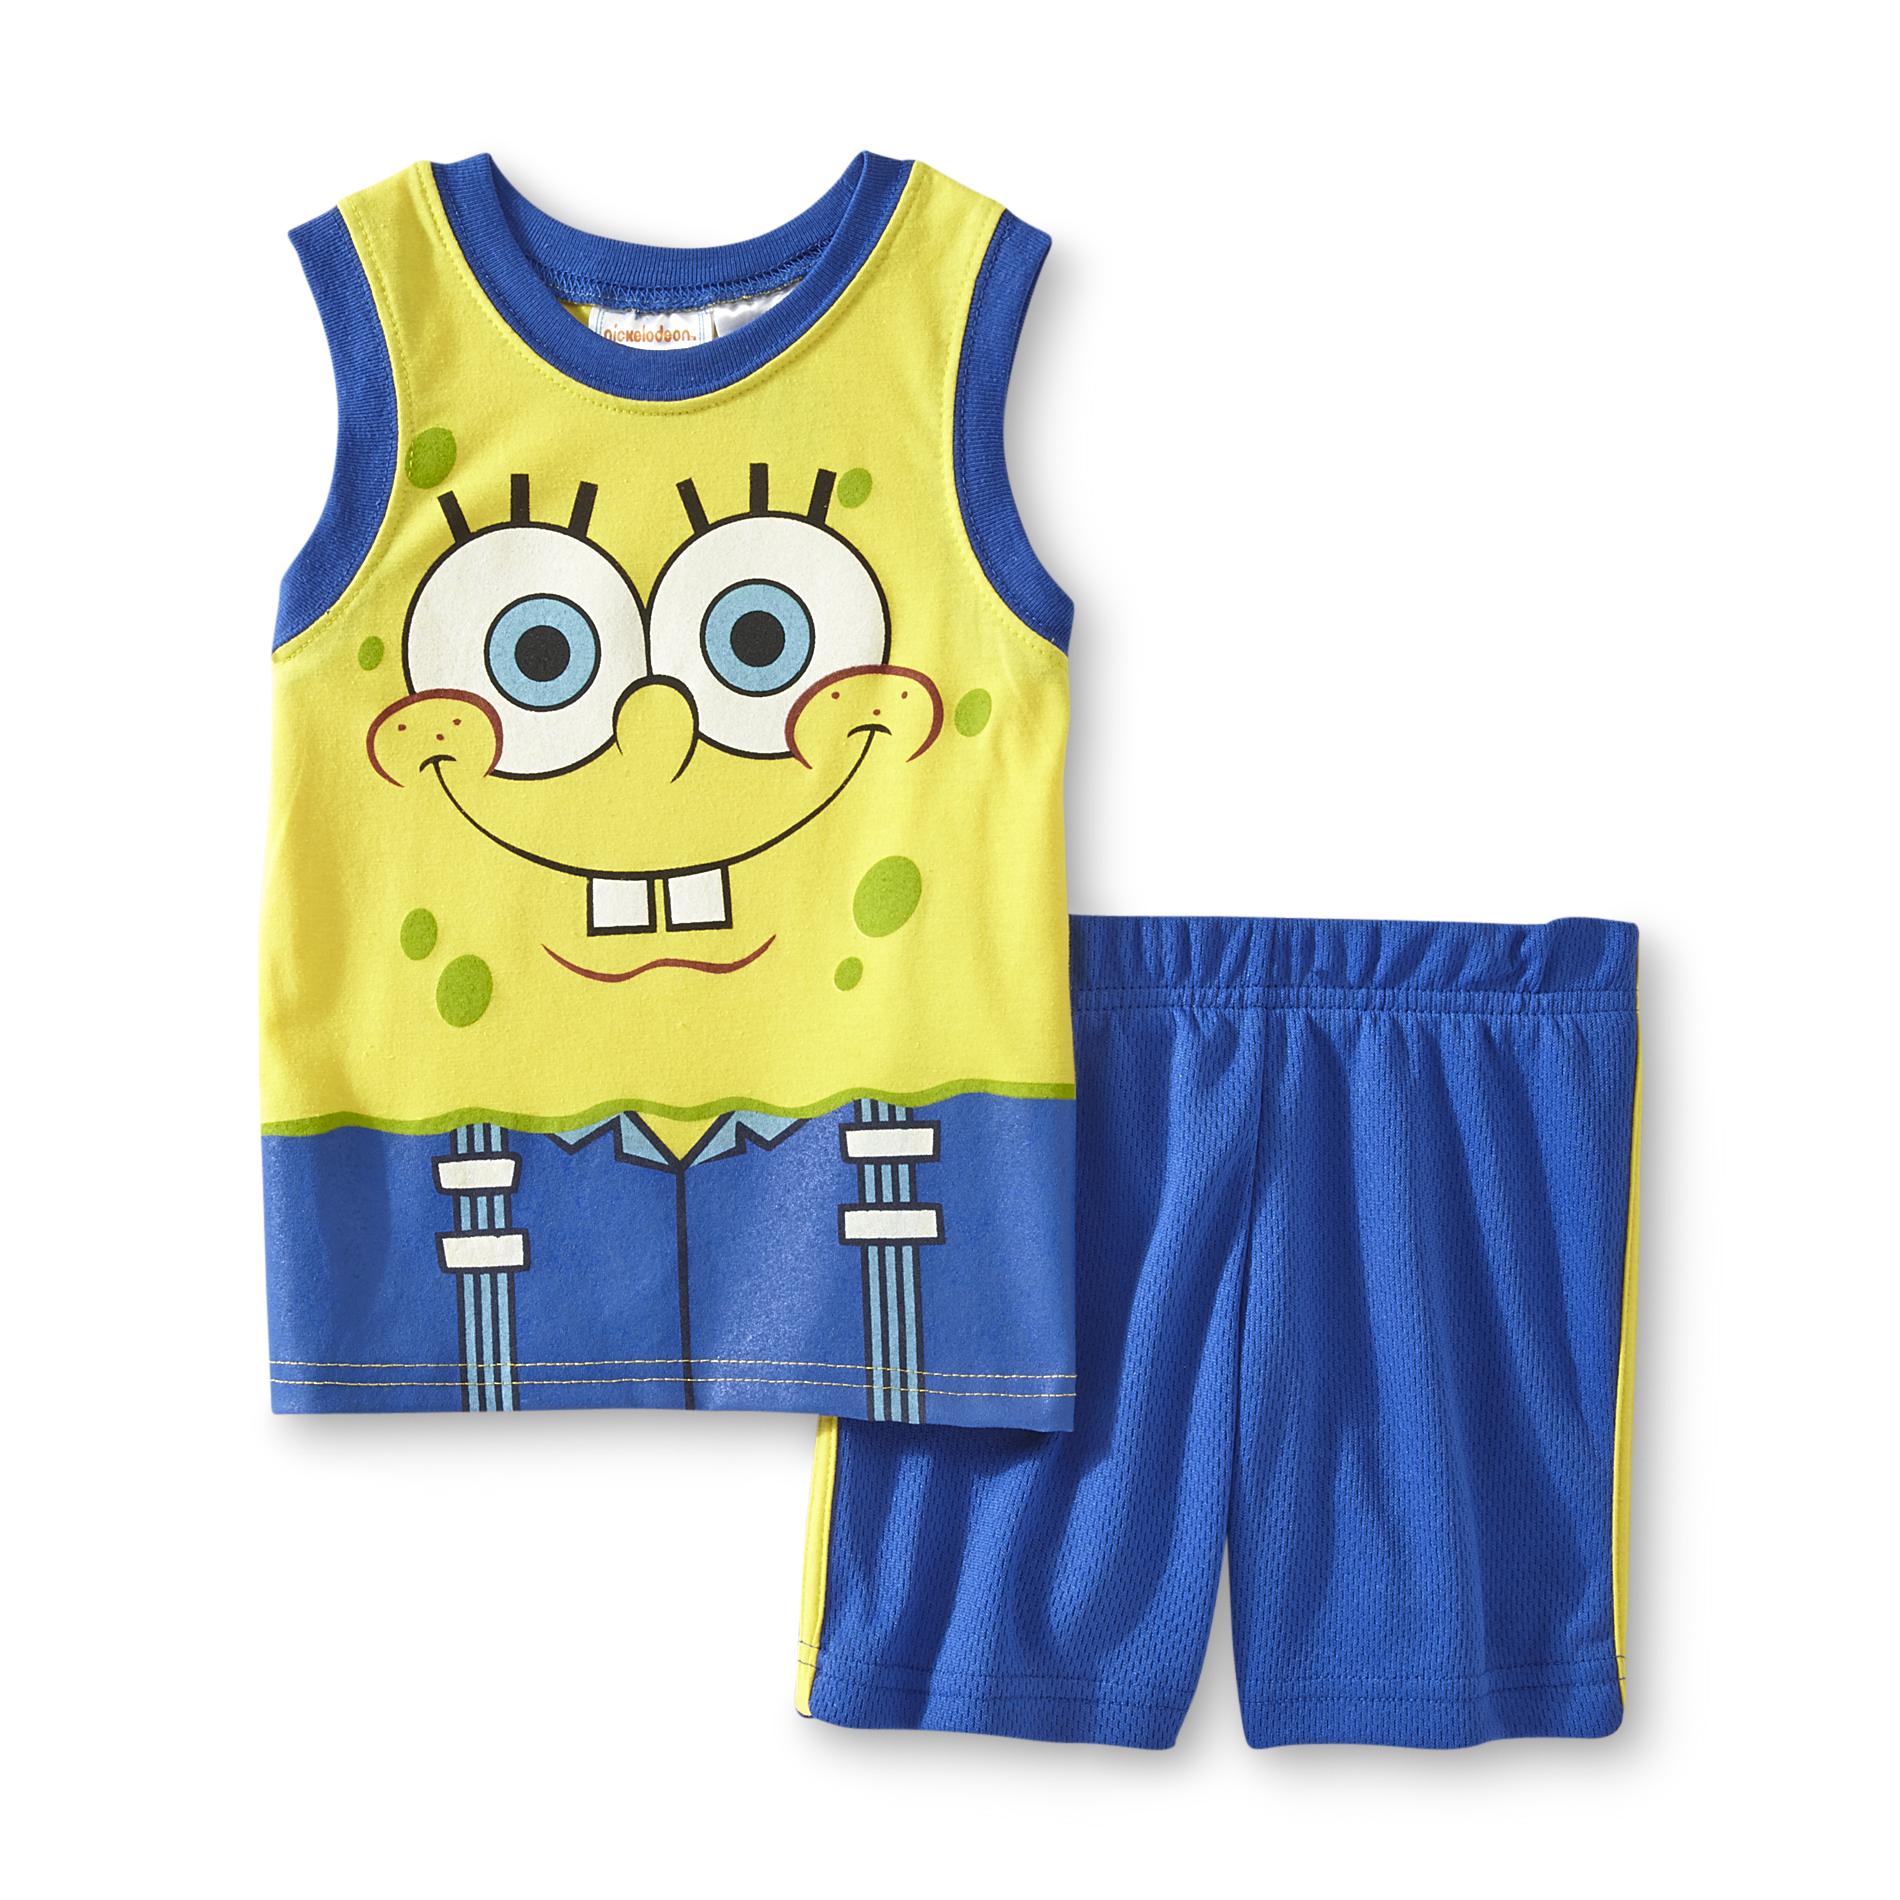 Nickelodeon SpongeBob SquarePants Toddler Boy's Tank Top & Shorts